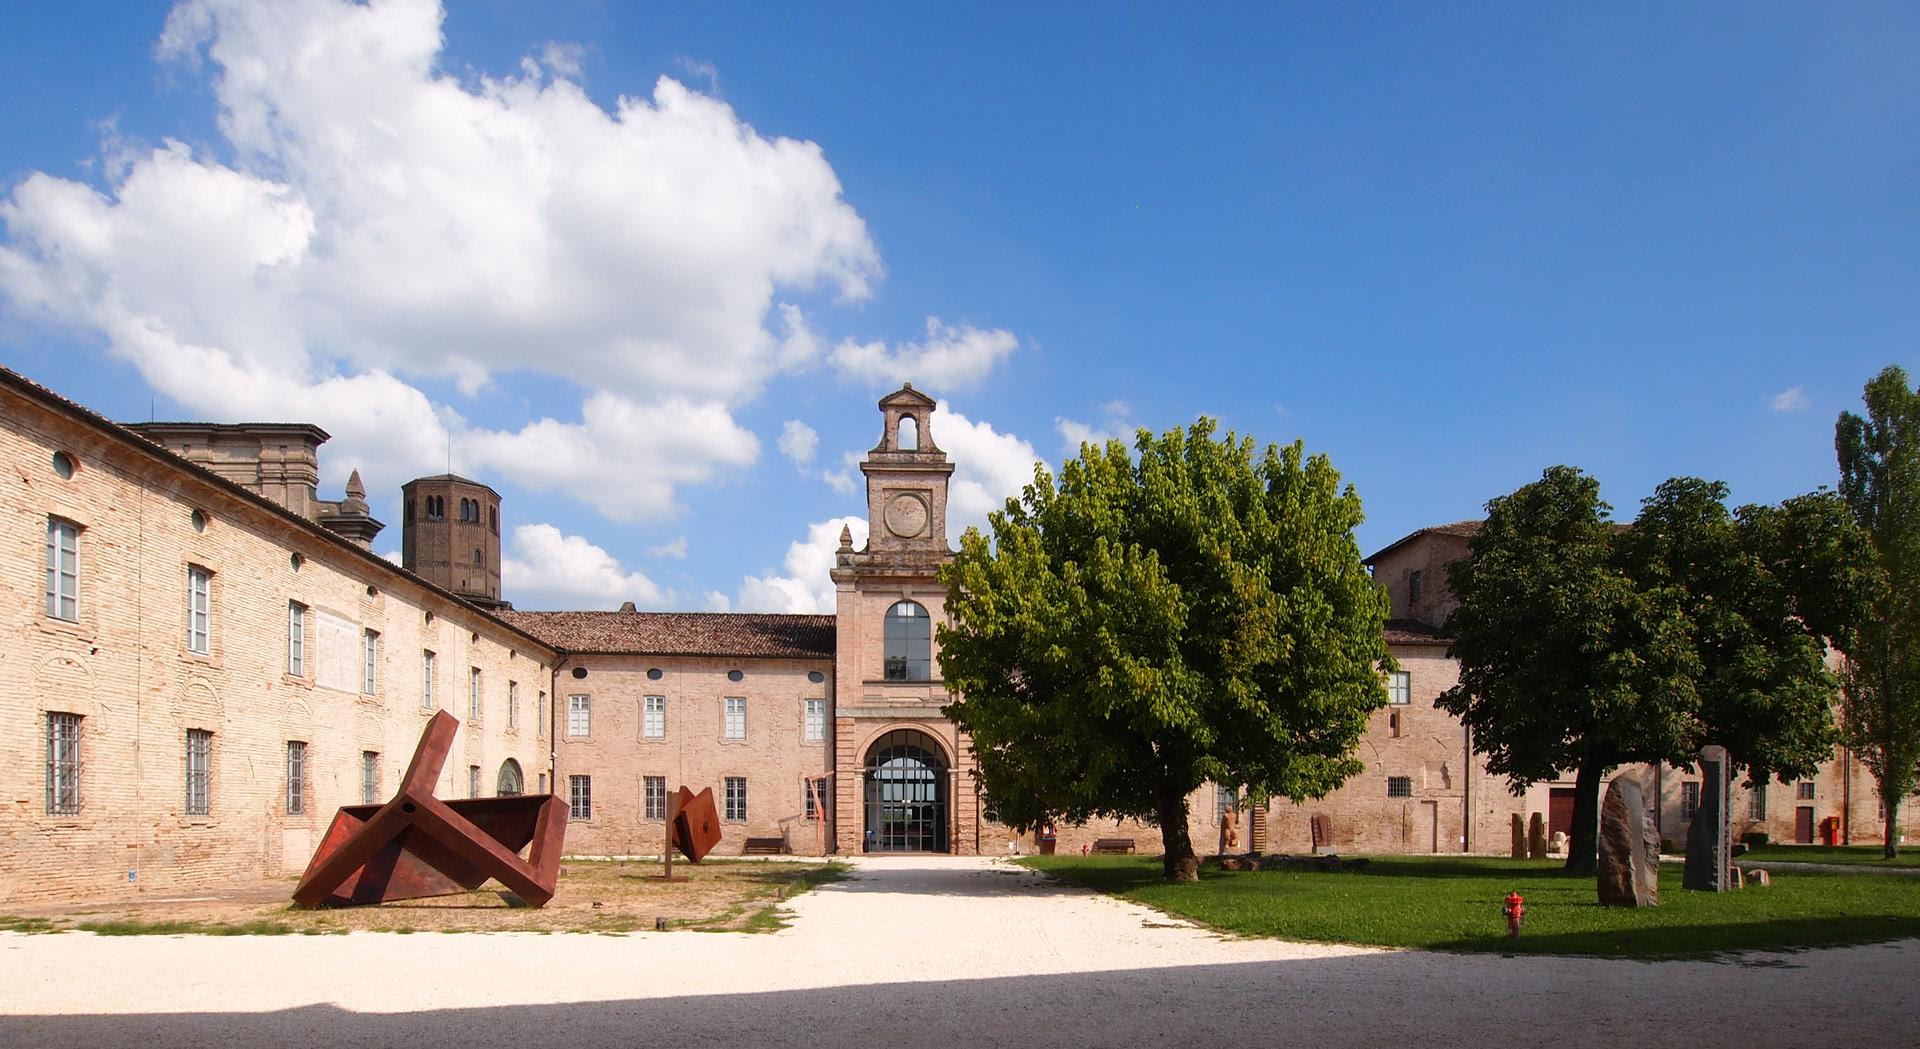 Archivio dal vivo: il nuovo percorso espositivo dello CSAC dell'Università di Parma